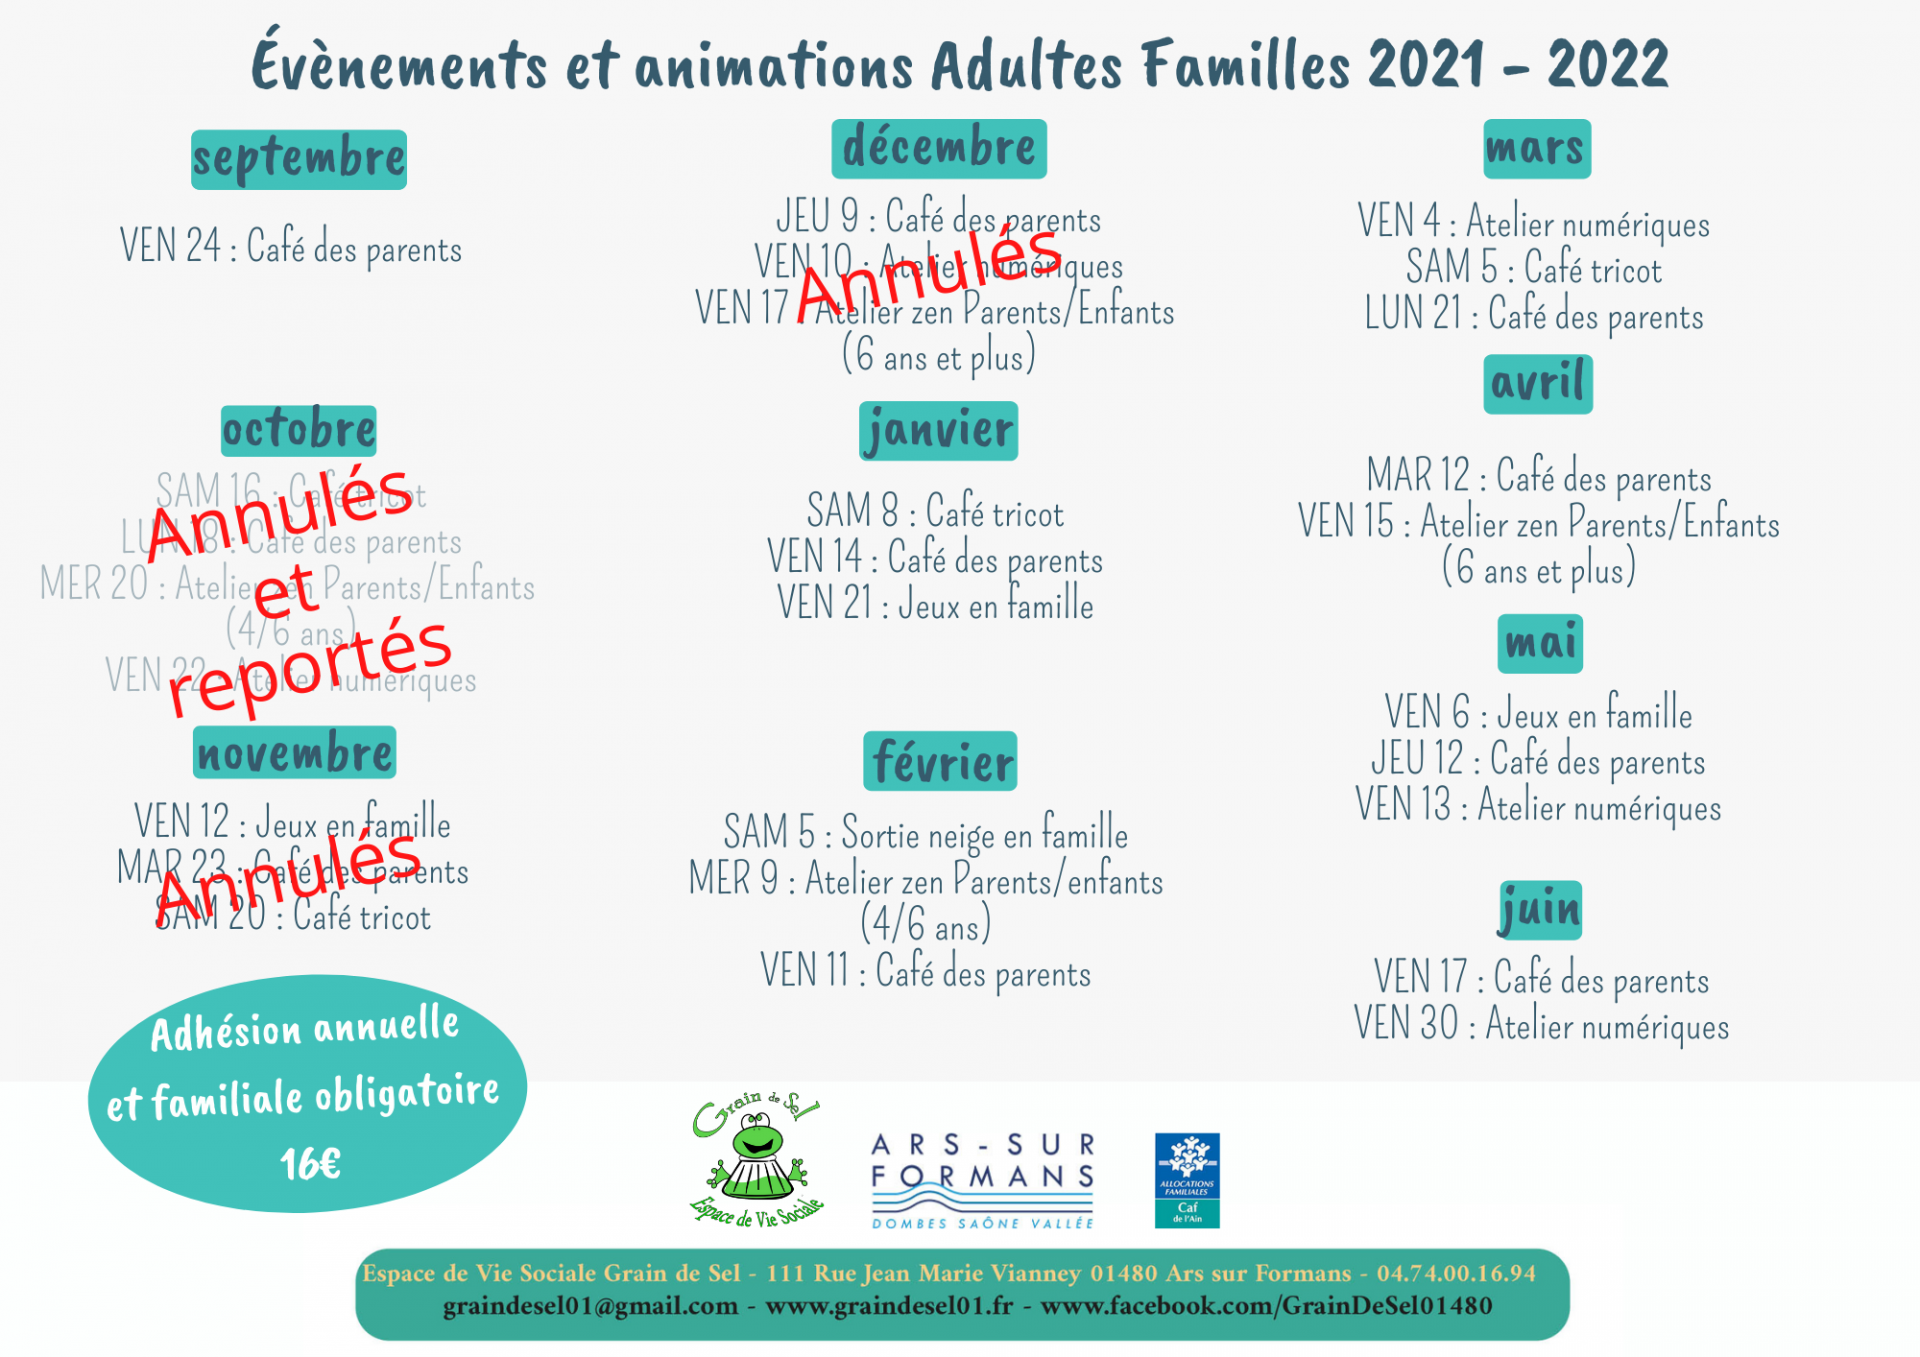 Evenements et animations adultes familles 2021 2022 2